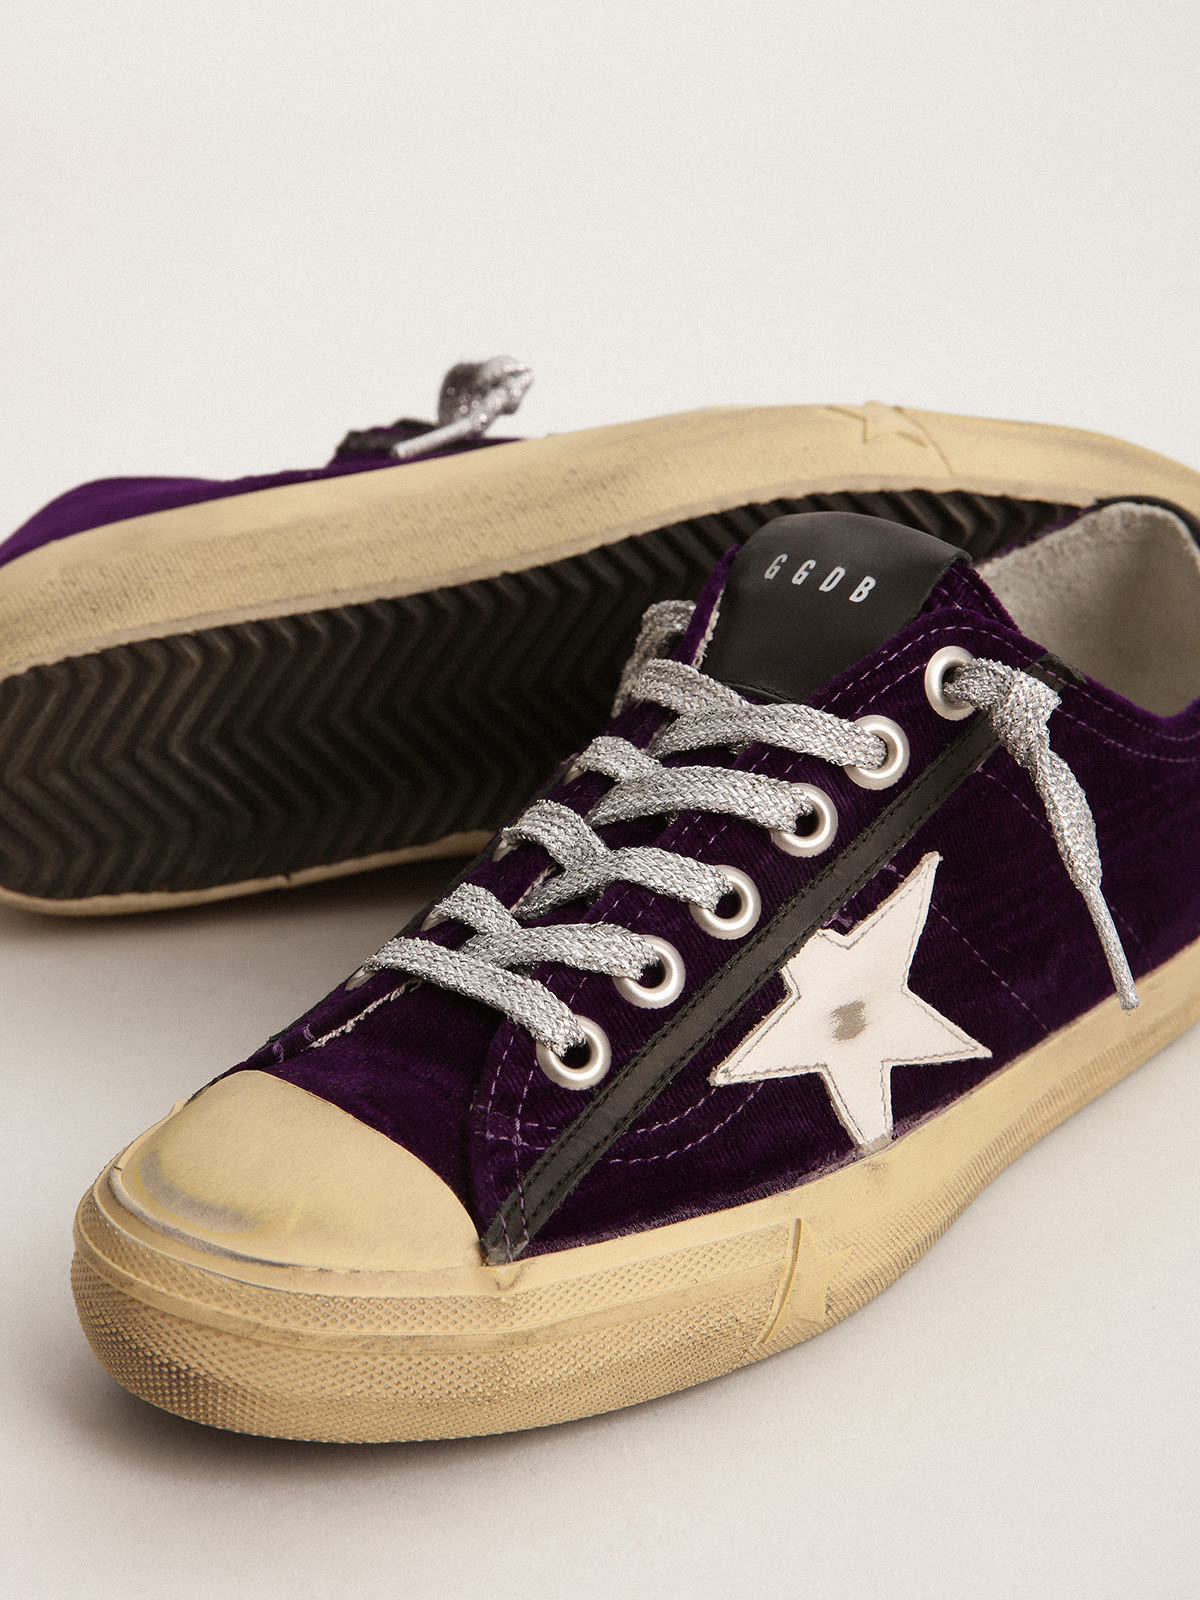 Golden Goose - Zapatillas deportivas V-Star LTD de terciopelo violeta con estrella de piel blanca in 